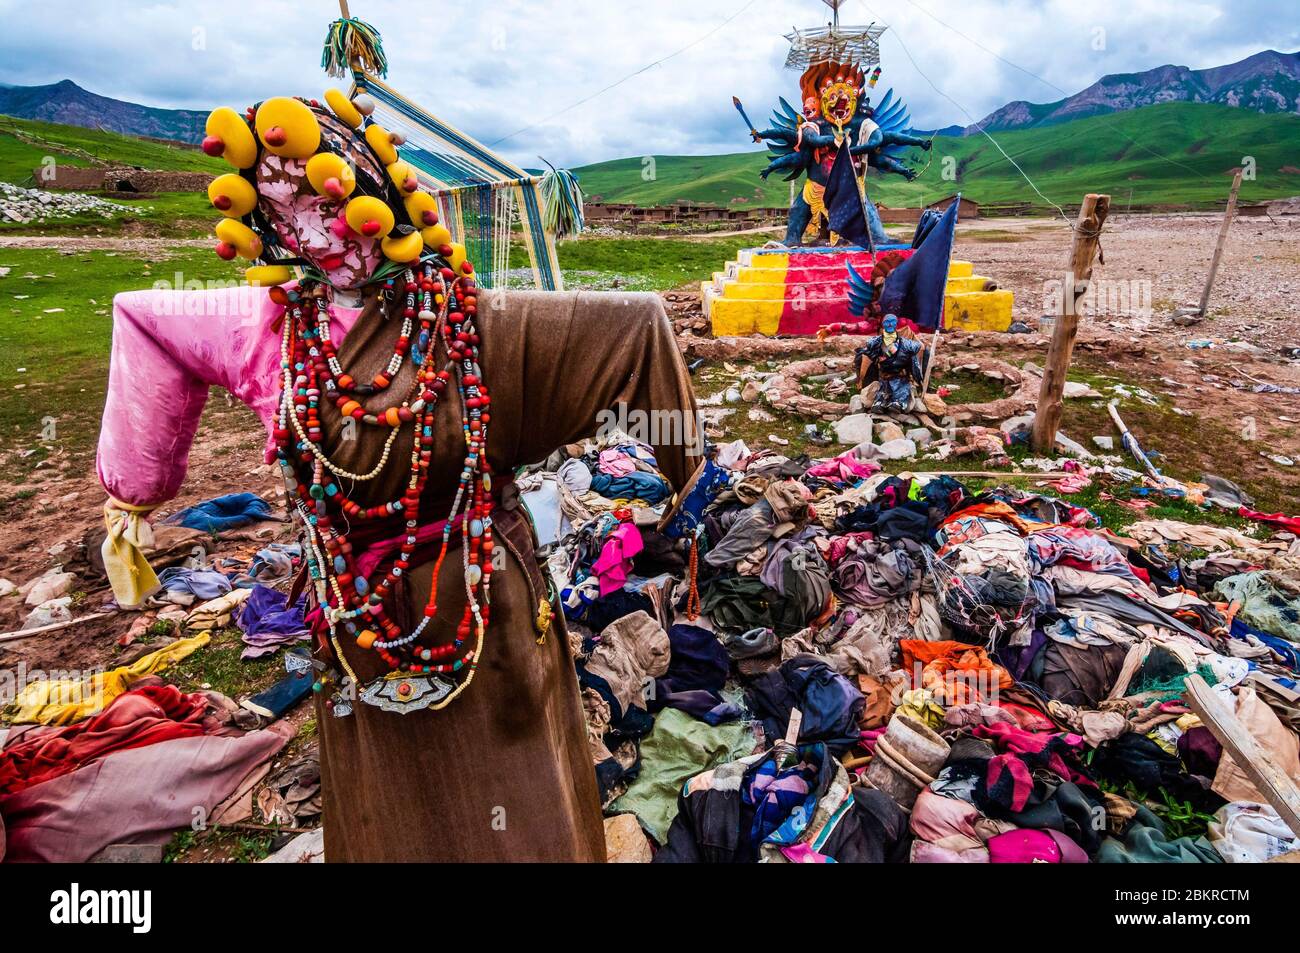 Cina, Tibet orientale, o Kham, Qinghai, Nagchu, monastero di Gar, sito rituale buddista per la preparazione alla morte e la migrazione dell'anima, secondo il Bardo Th?dol, o libro tibetano dei morti, che significa liberazione ascoltando gli stati intermedi Foto Stock